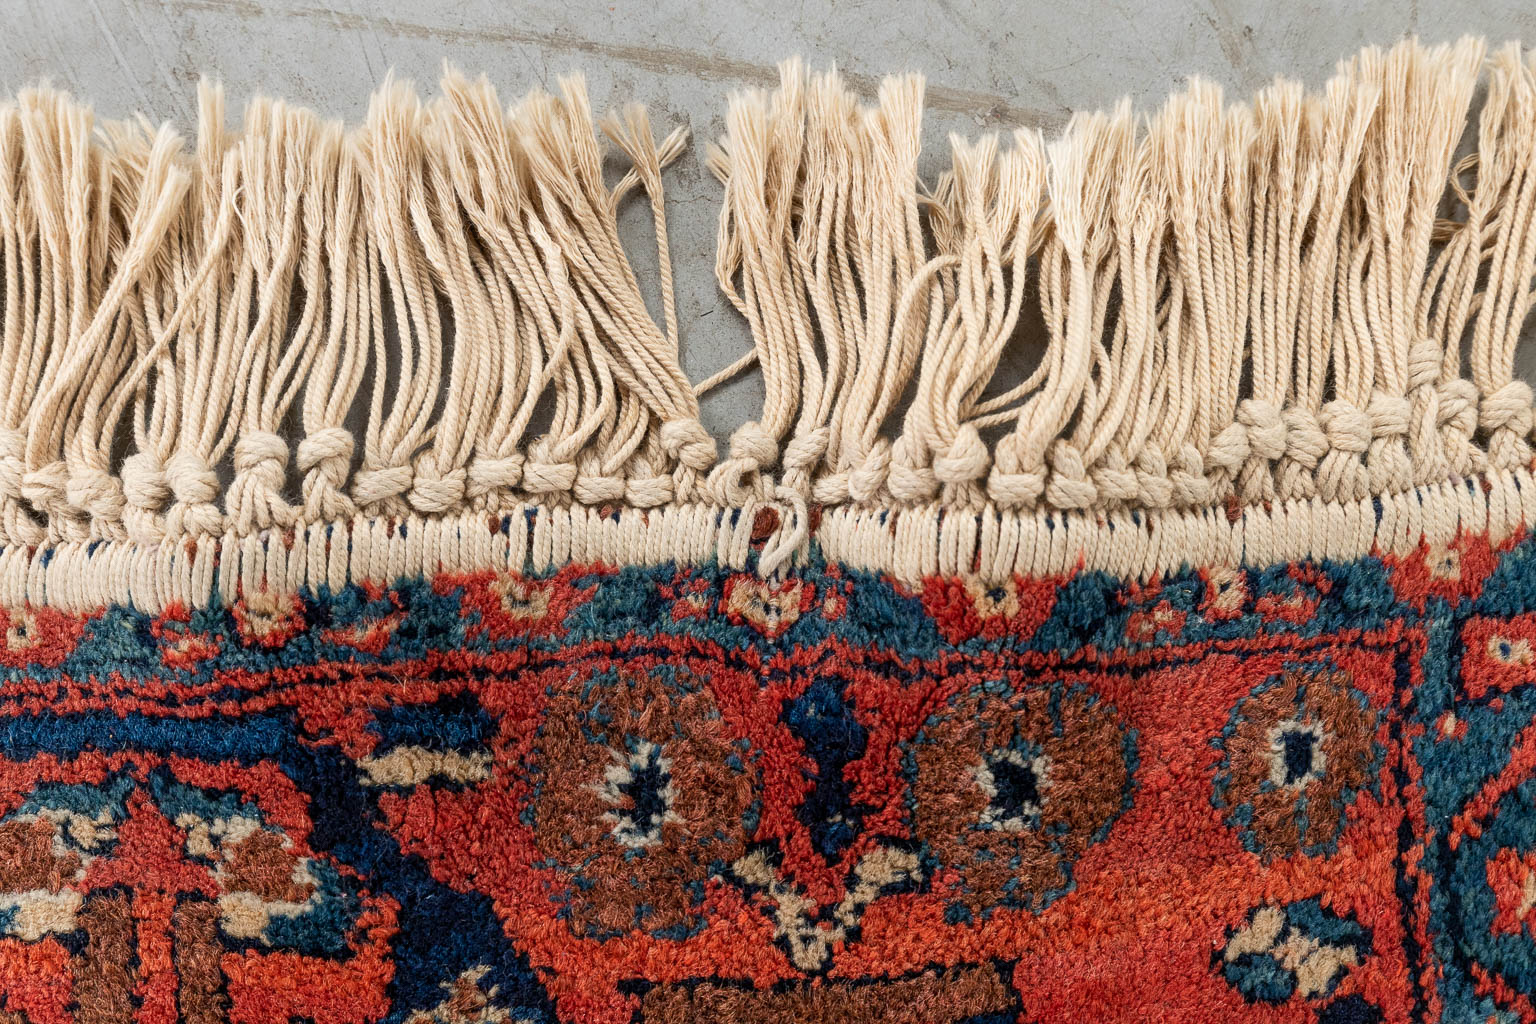 An Oriental hand-made carpet, Afshar. (D:184 x W:164 cm)